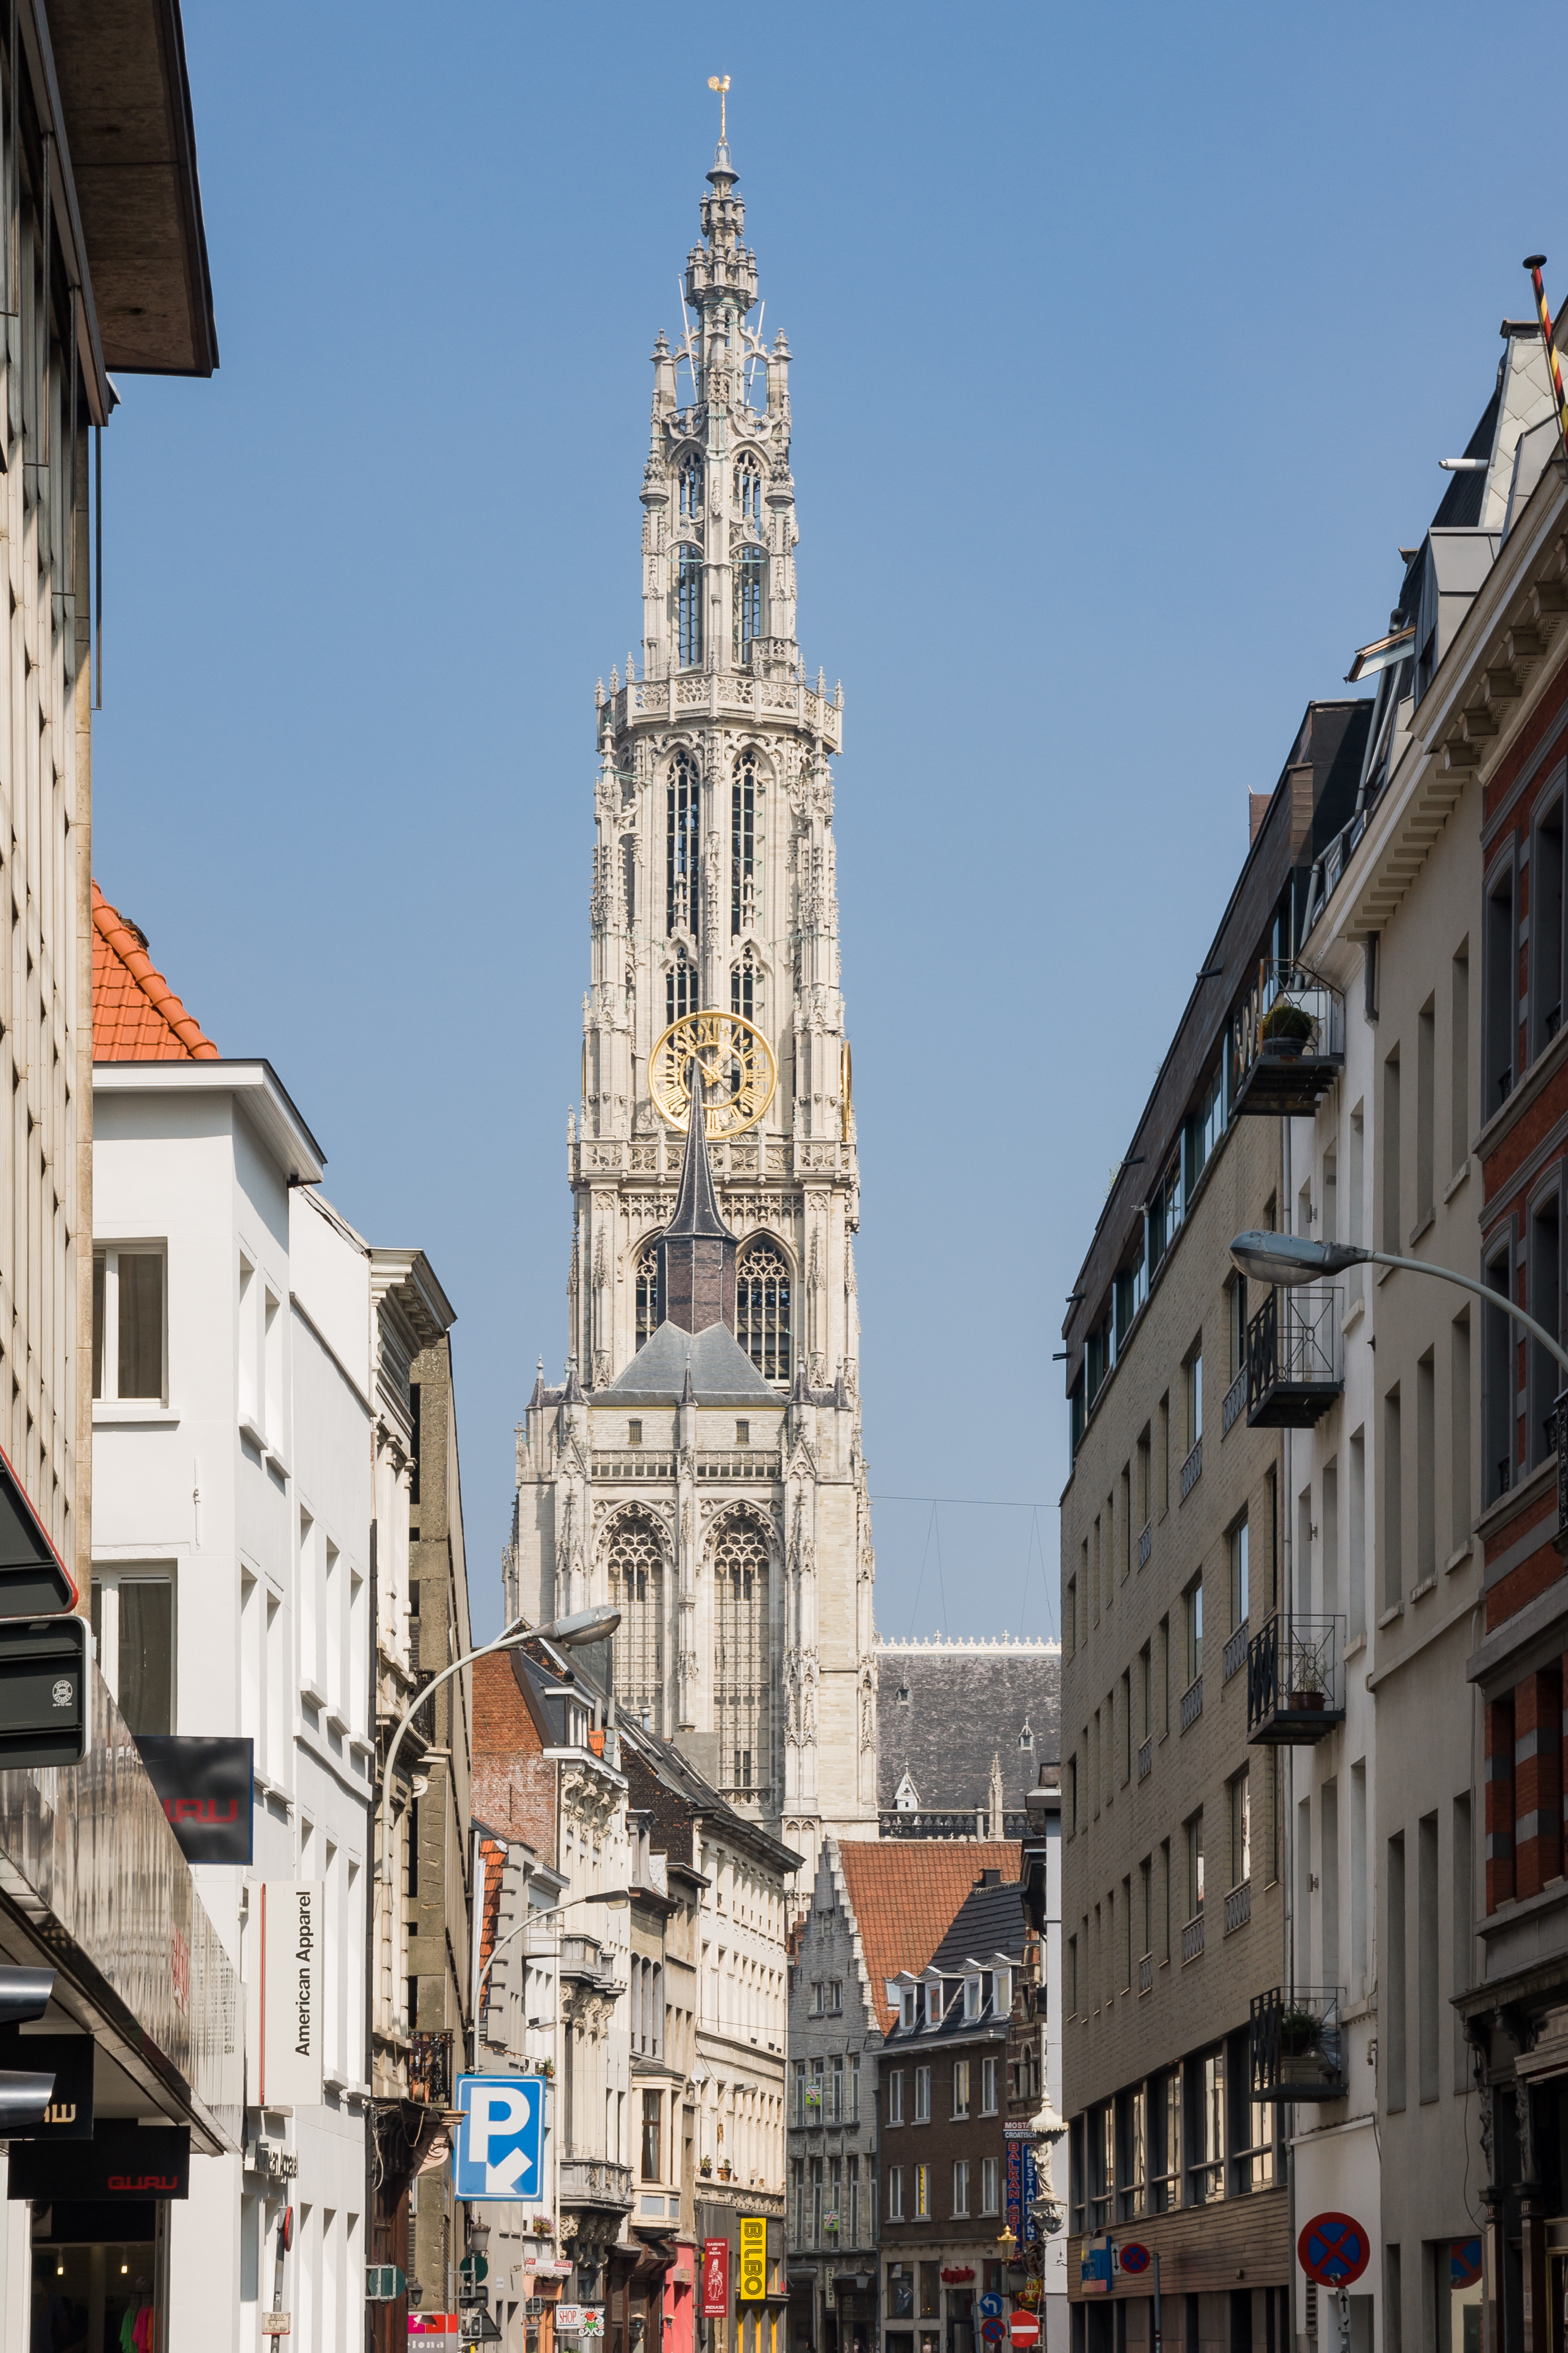 Antwerp Belgium Tower-of-Onze-Lieve-Vrouwekathedraal-01